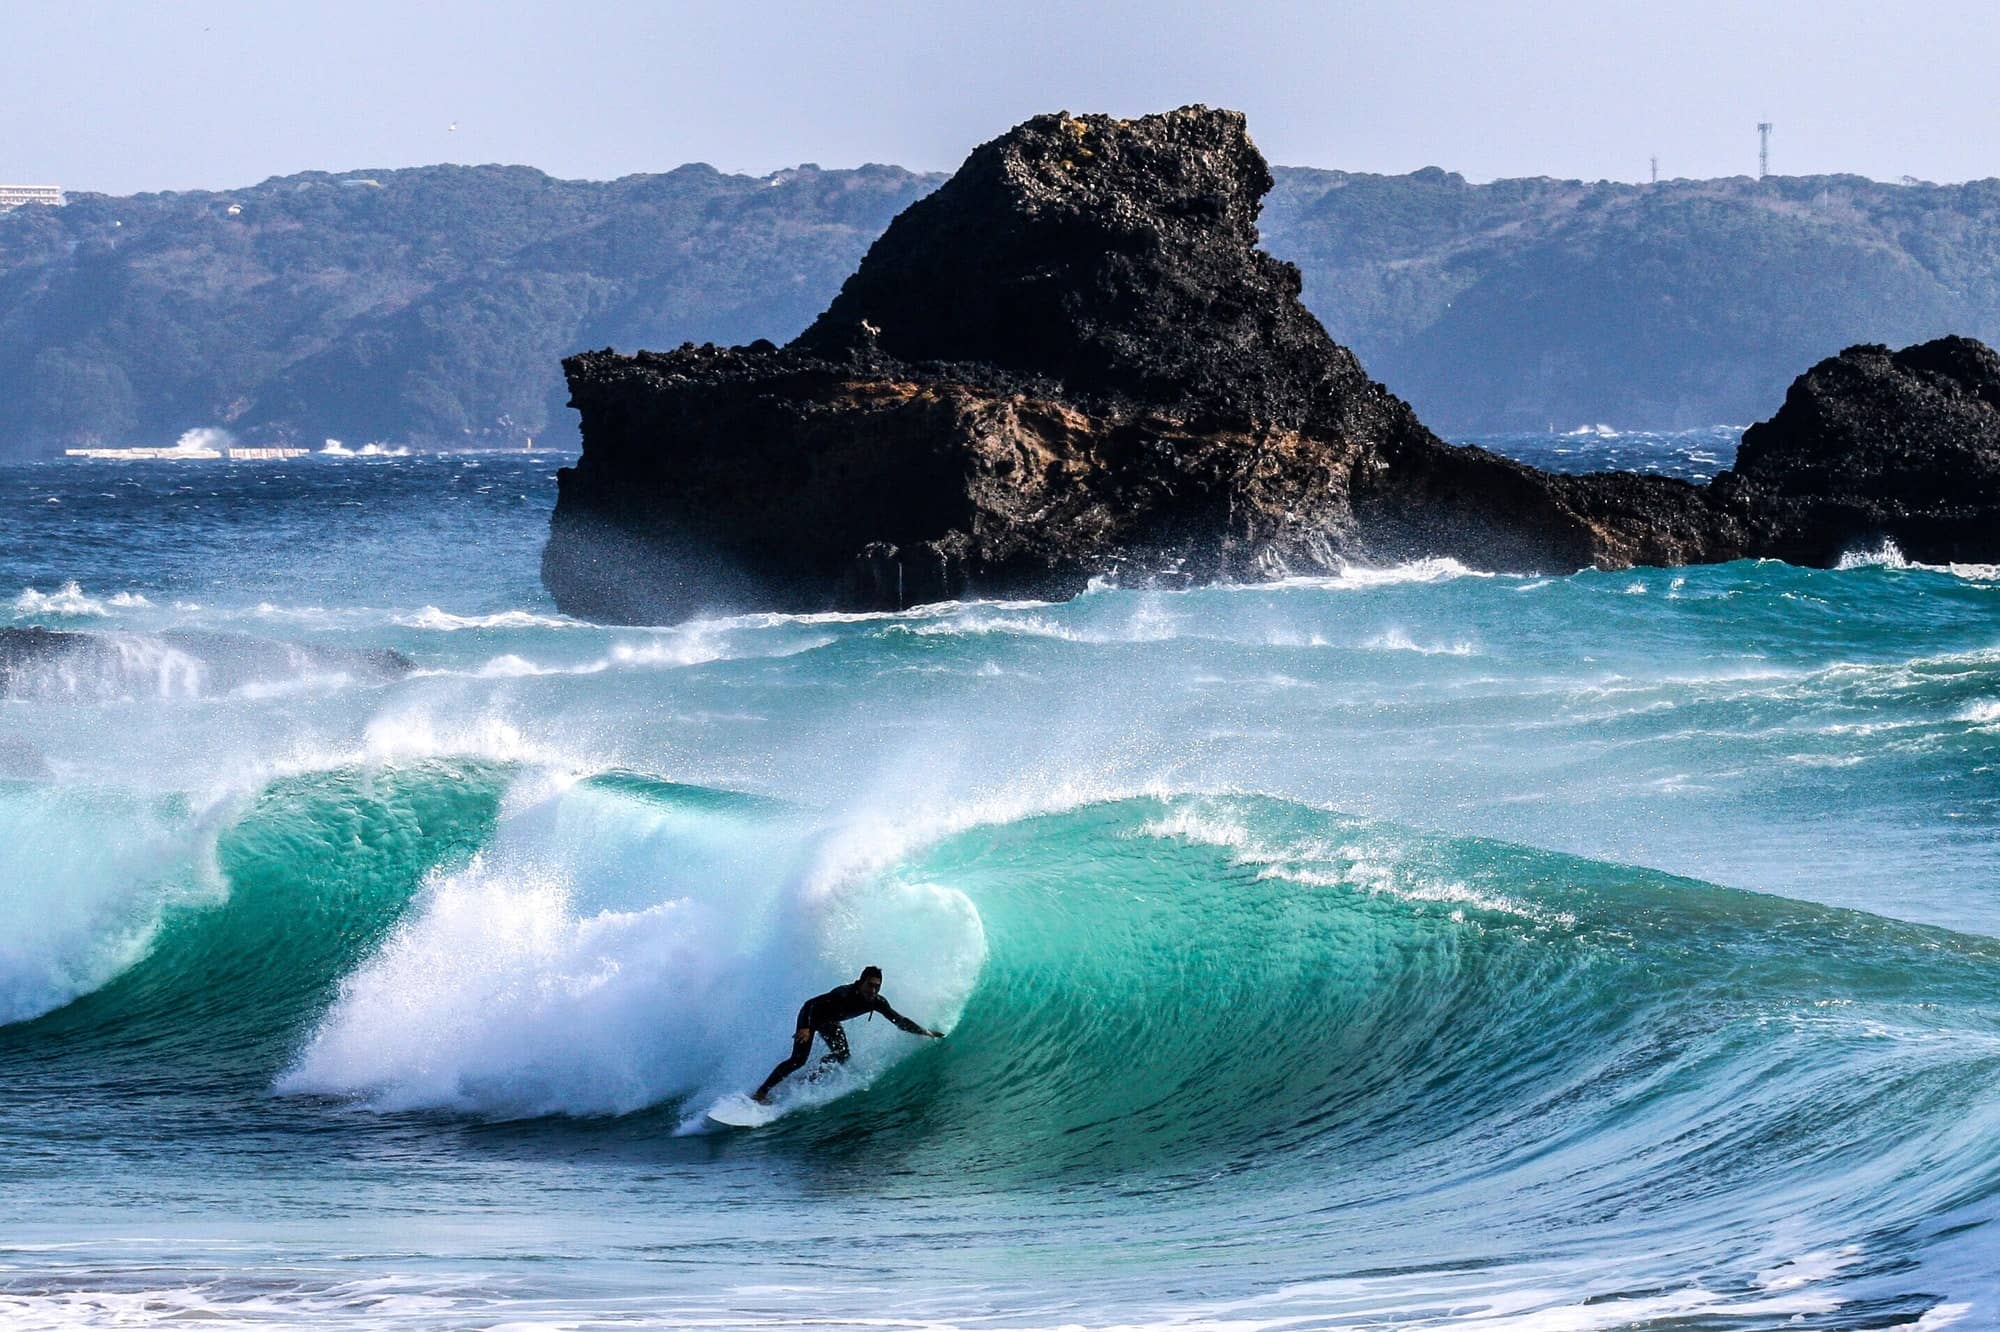 surfer on wave in Japan